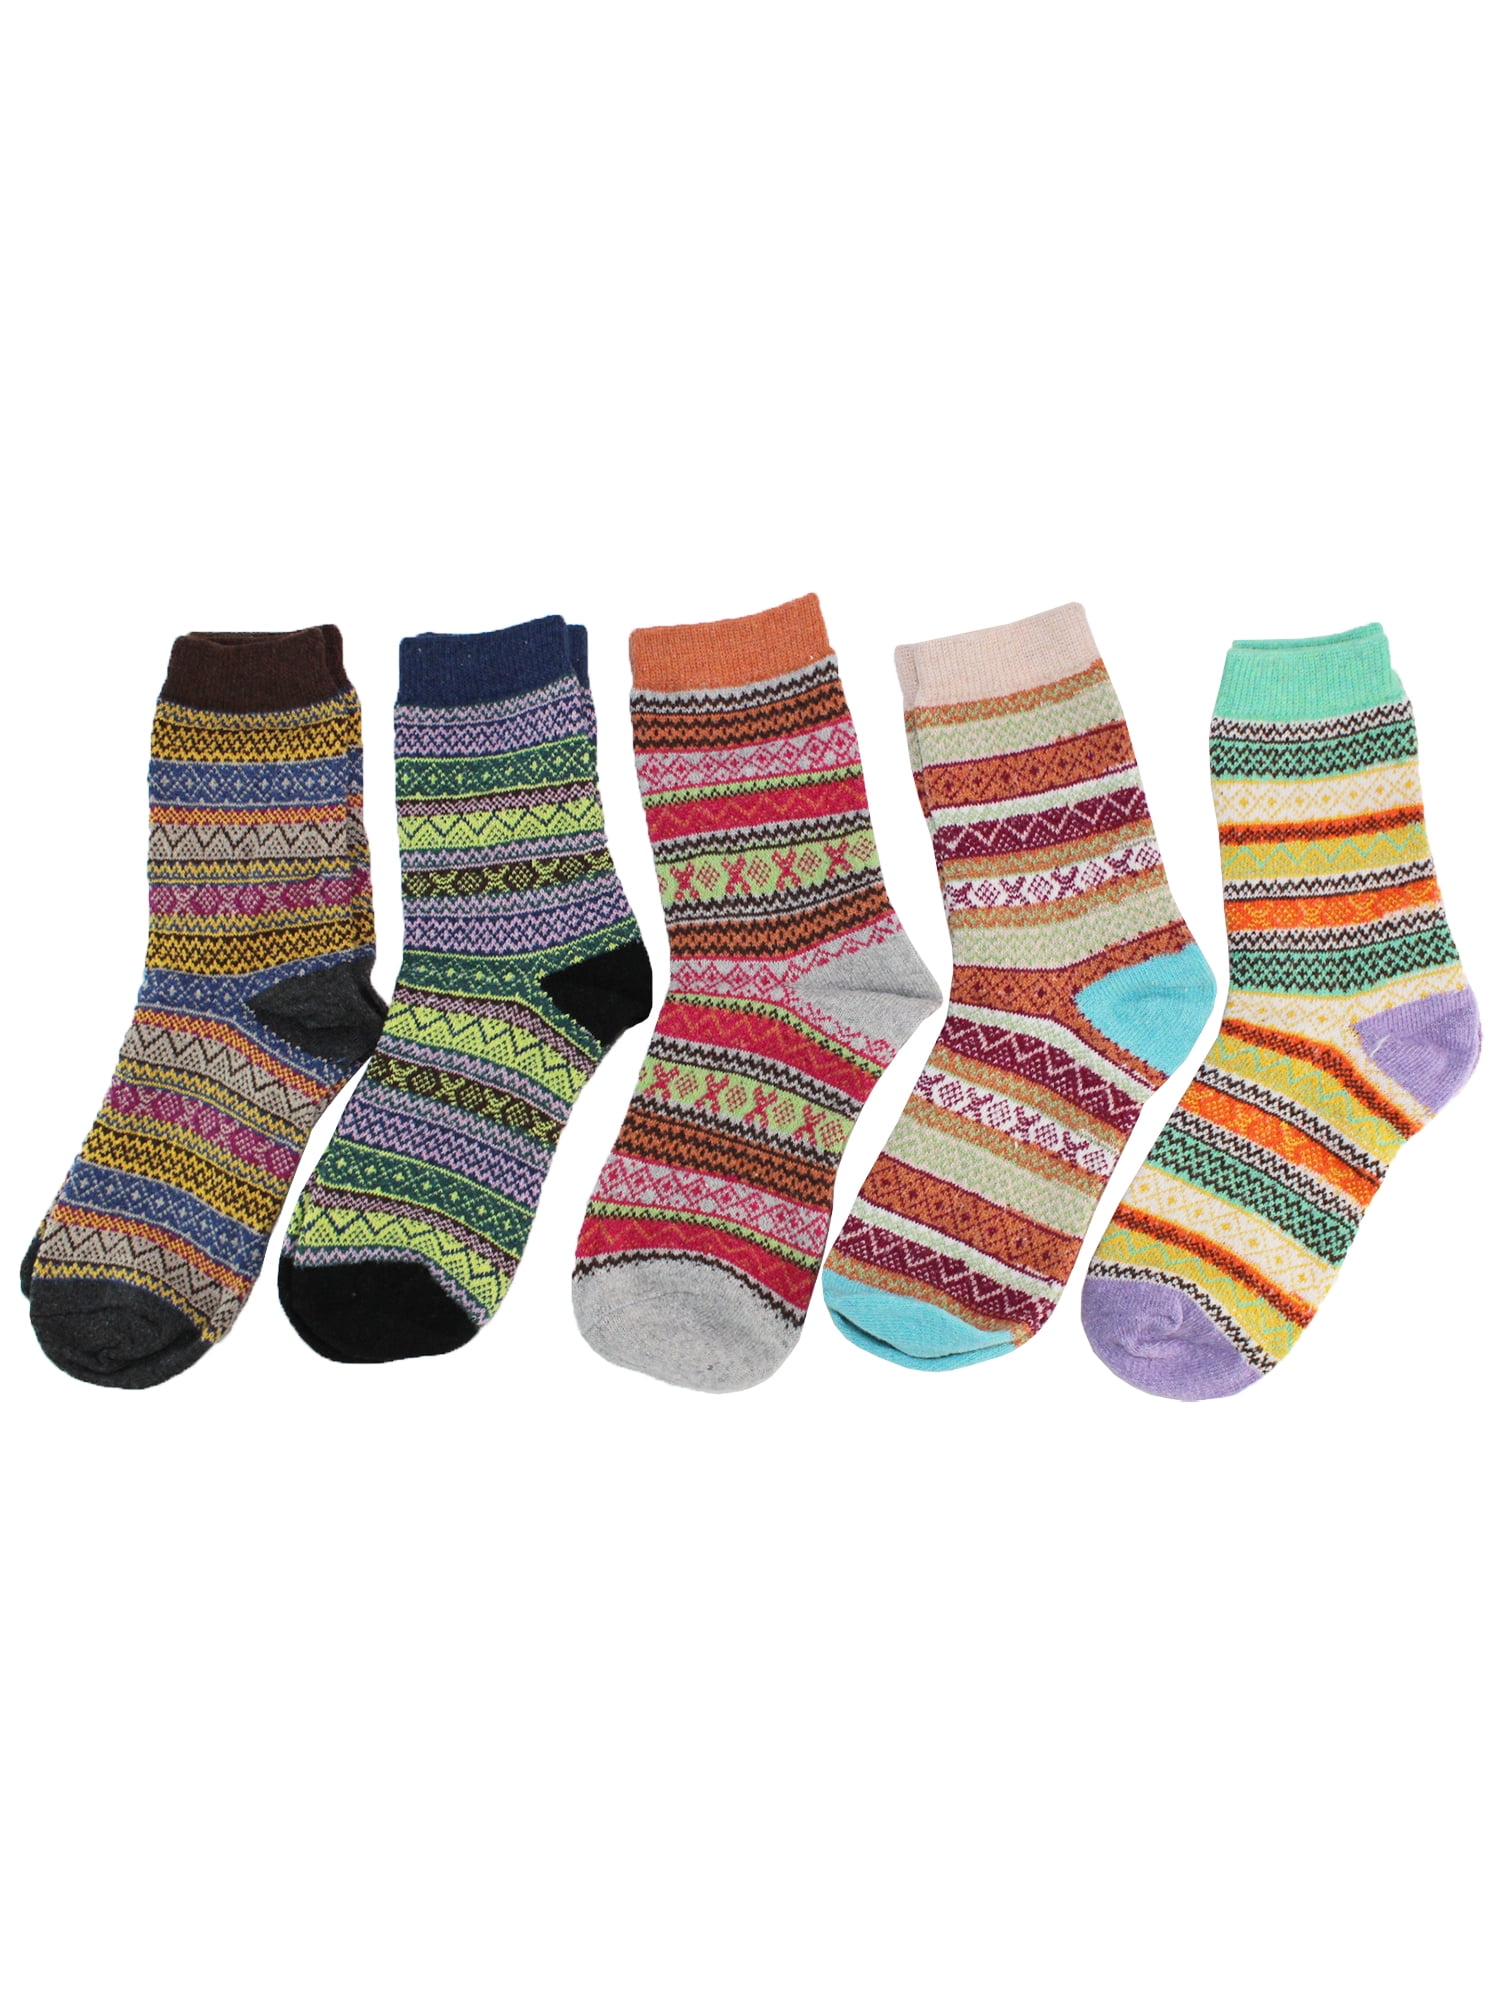 Wool socks women Custom socks Soft Socks Adult Knitted Socks Winter Socks Sizes S